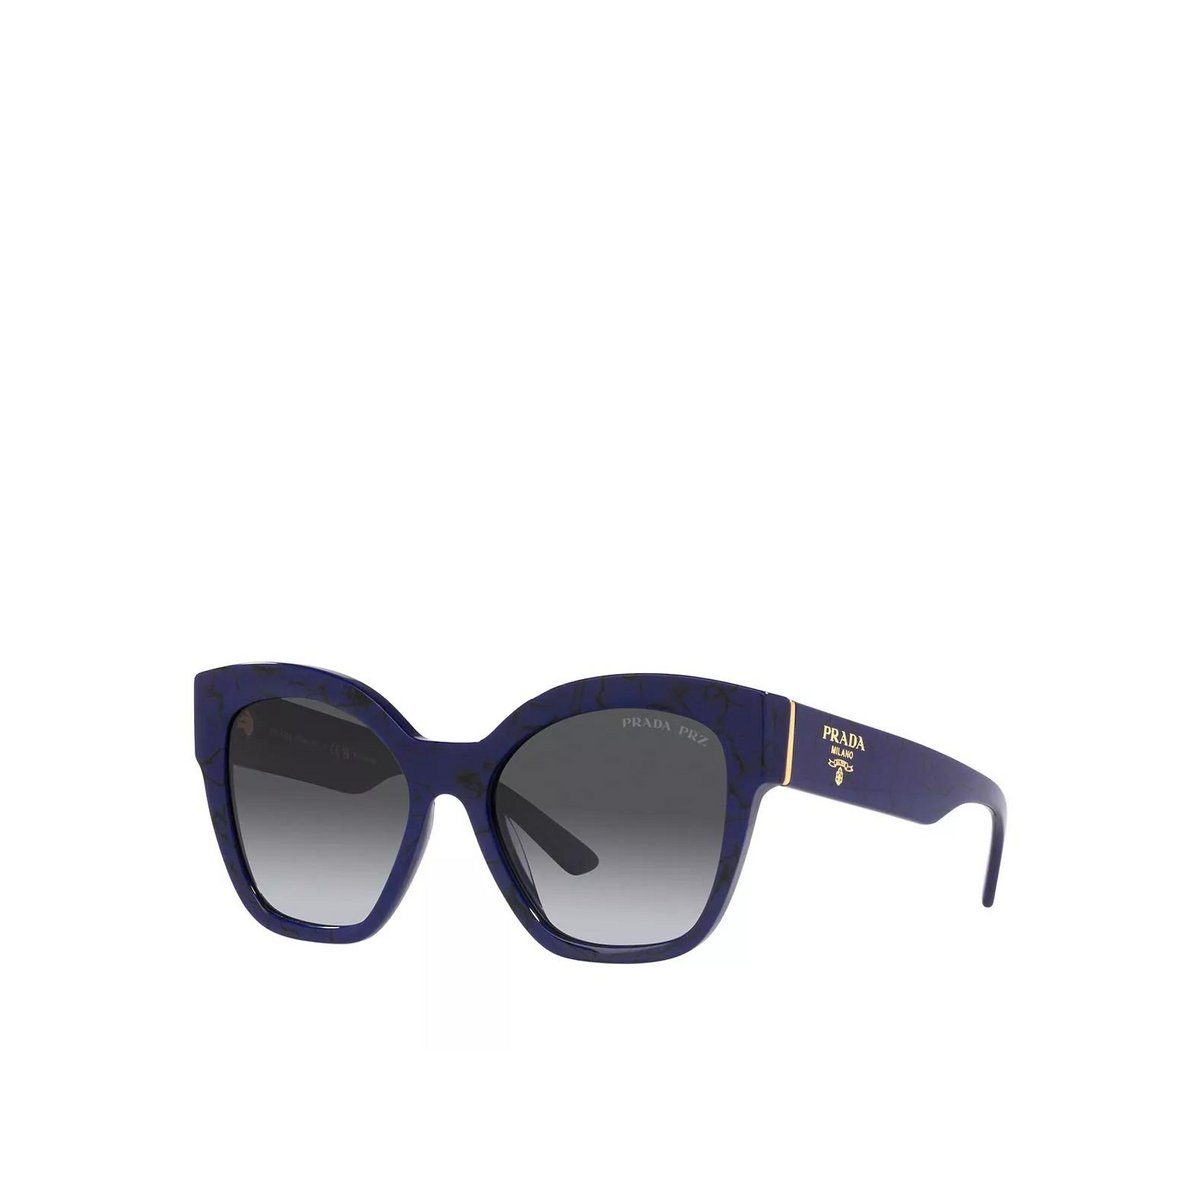 Herren Sonnenbrillen online kaufen | OTTO